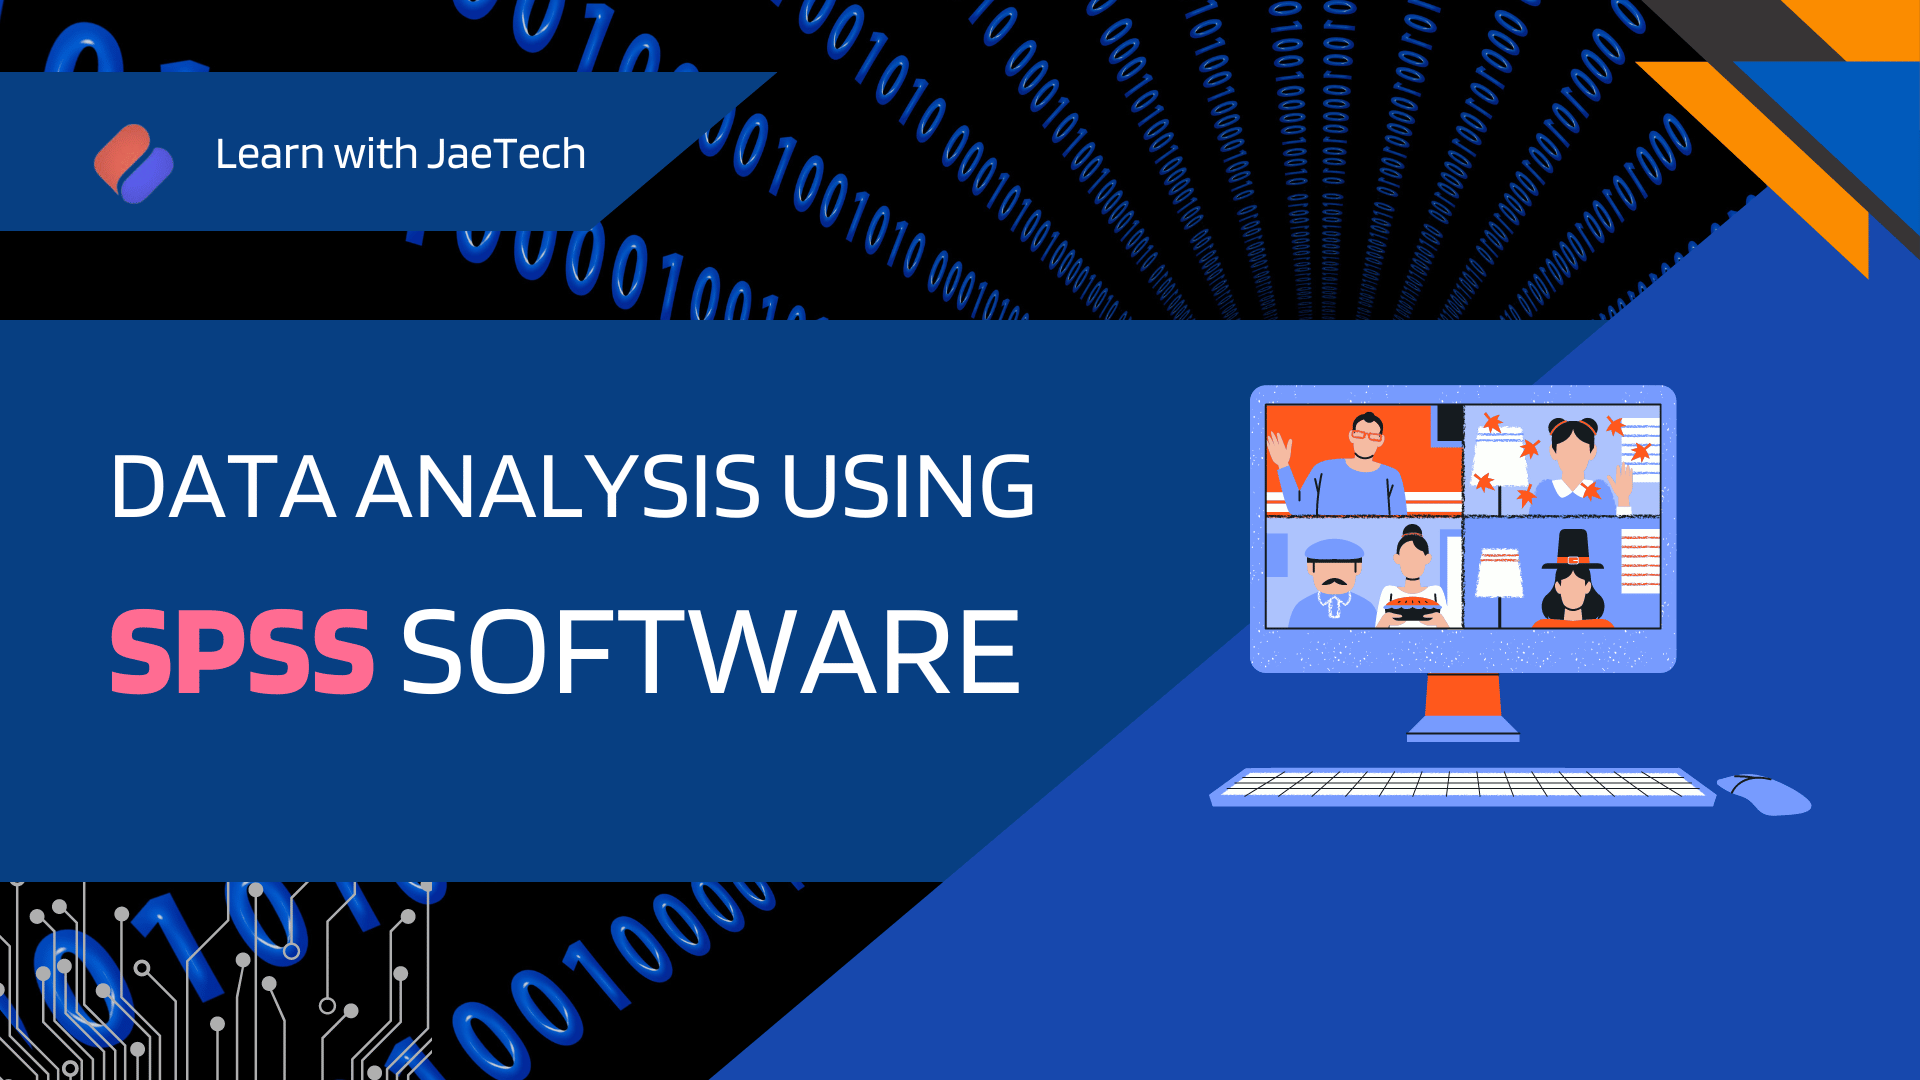 JaeTech Data Analysis using SPSS